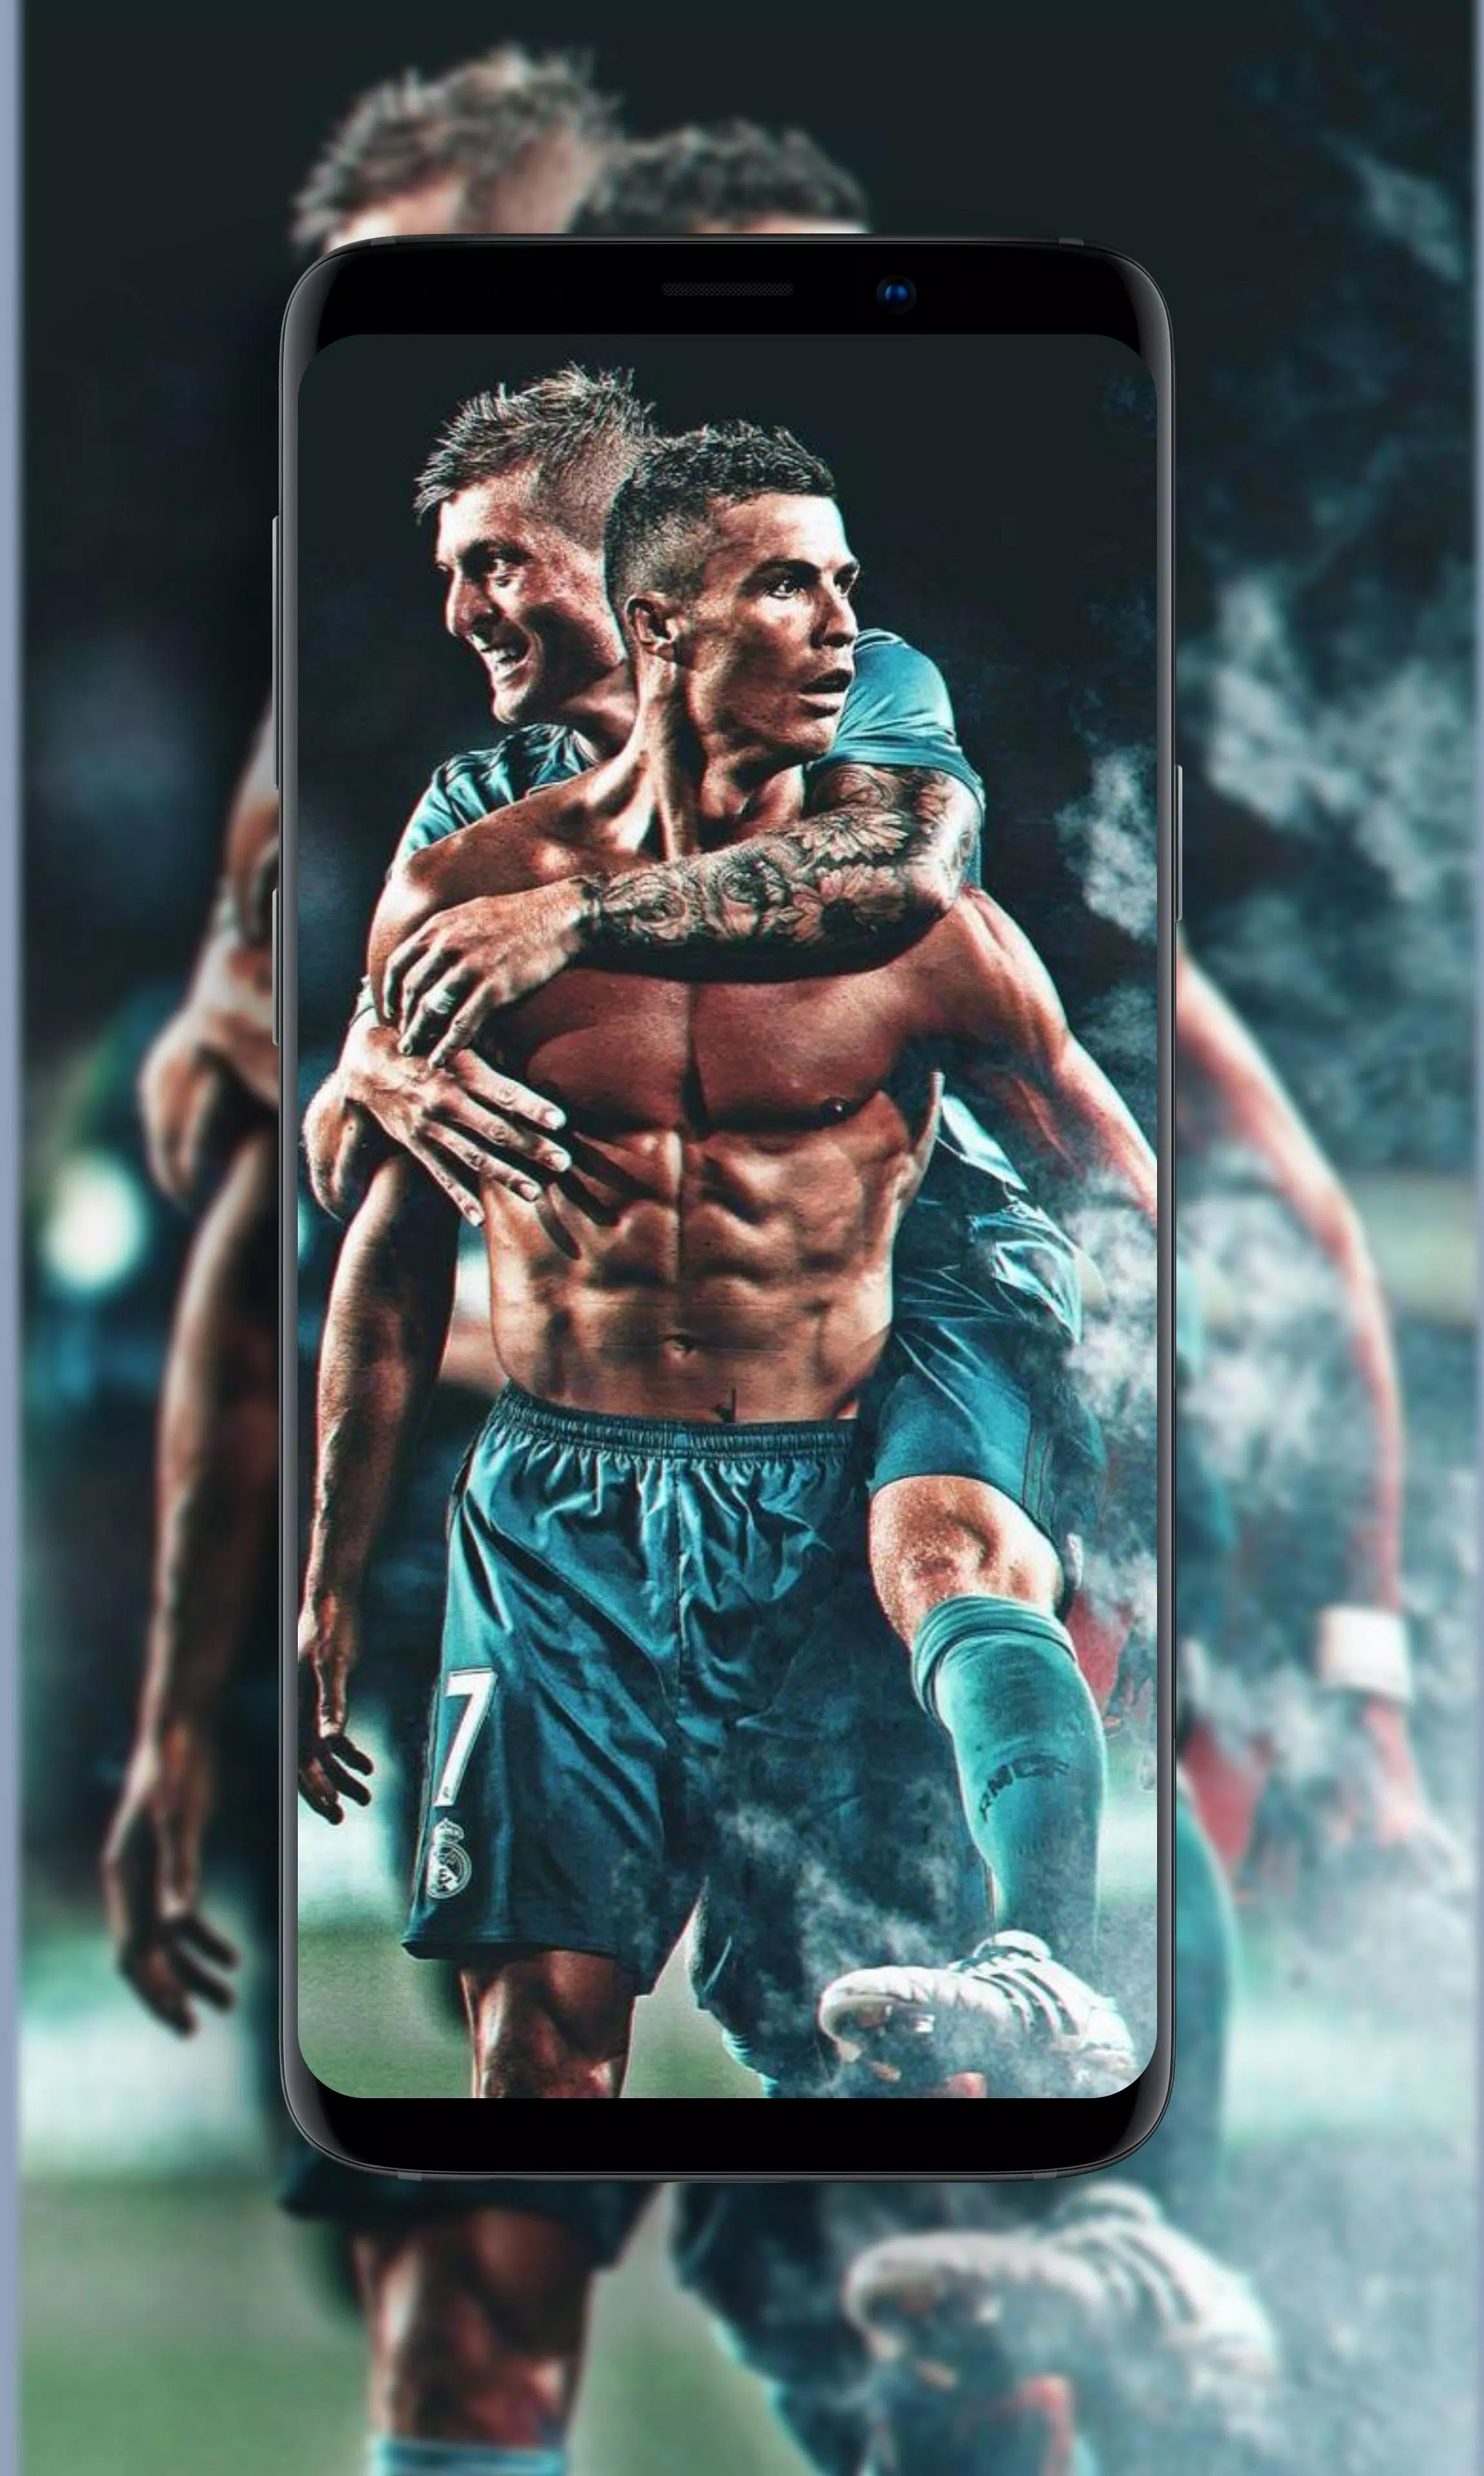 Các fan của Ronaldo không thể bỏ qua bức ảnh với chất lượng 8k sắc nét như thật. Hãy đắm mình vào màn hình để cảm nhận sự tuyệt vời của ngôi sao bóng đá này.